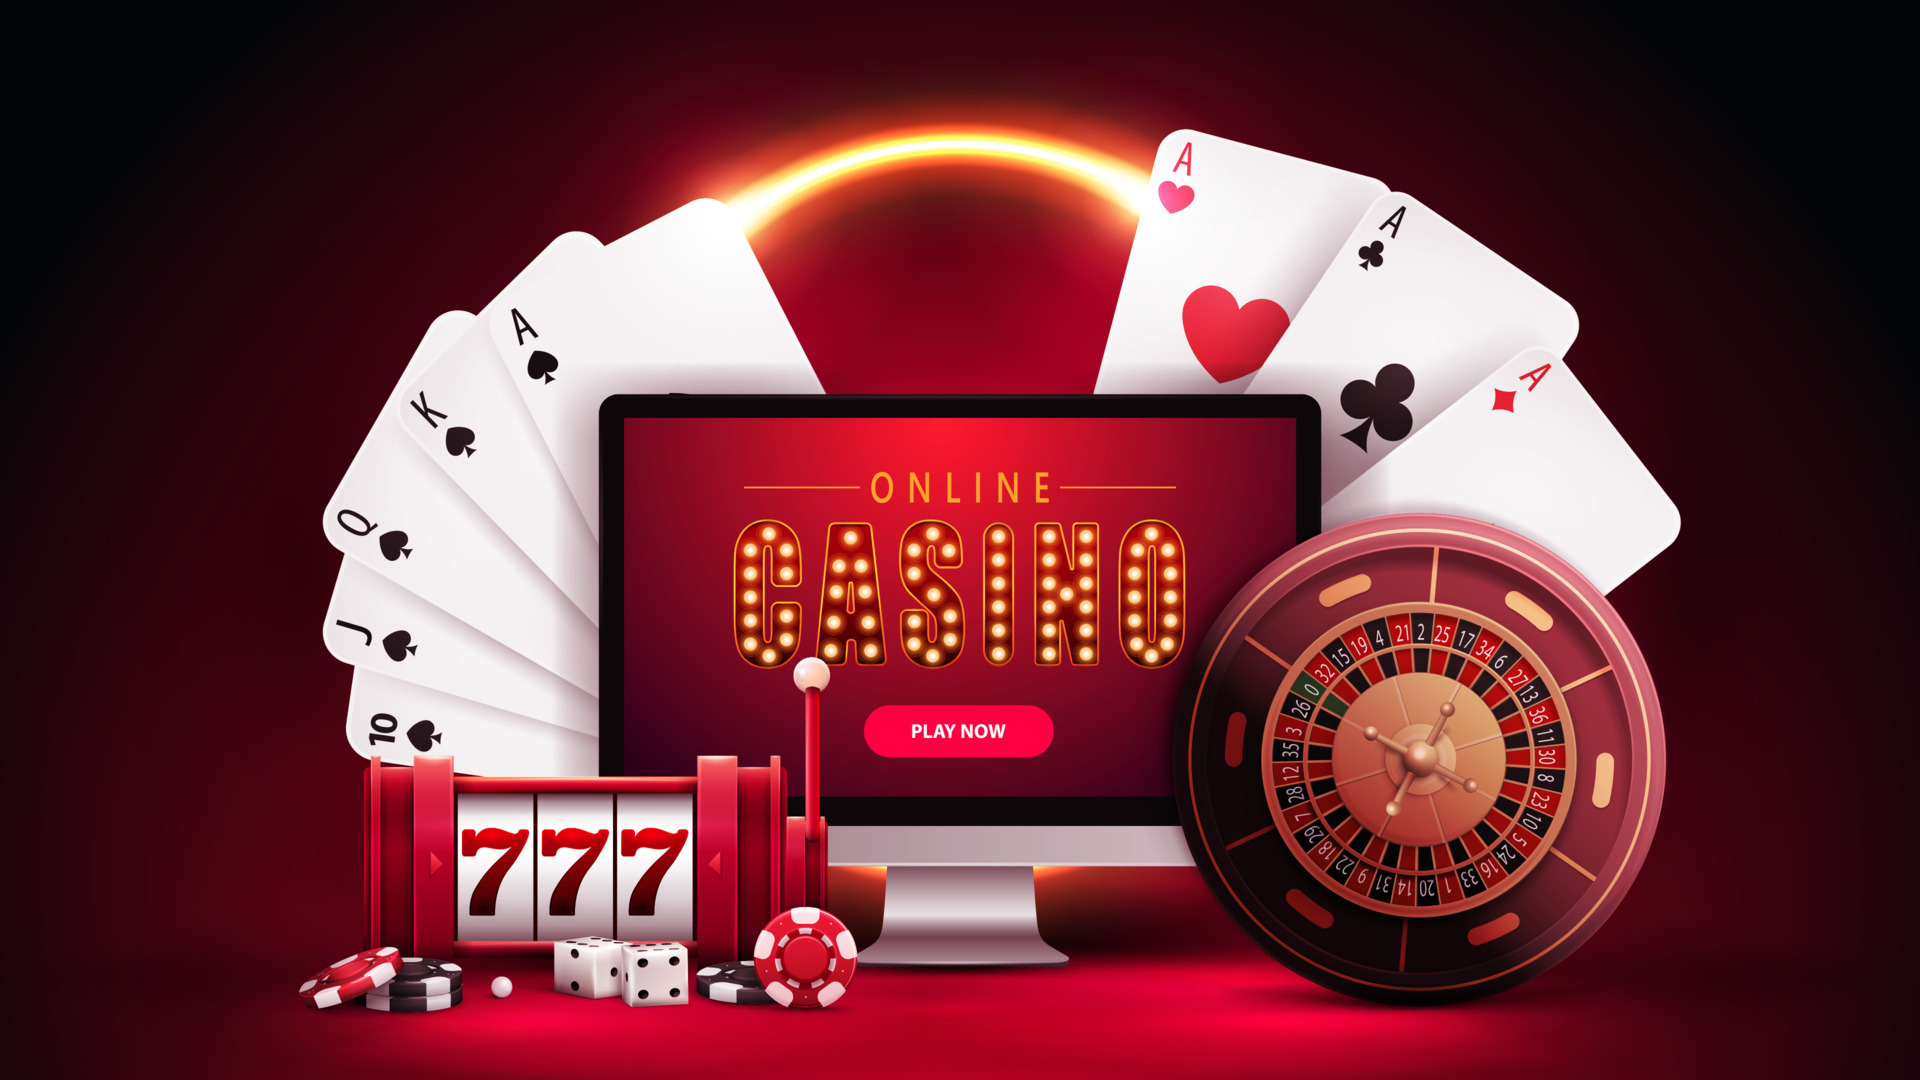 Online Casino Bg